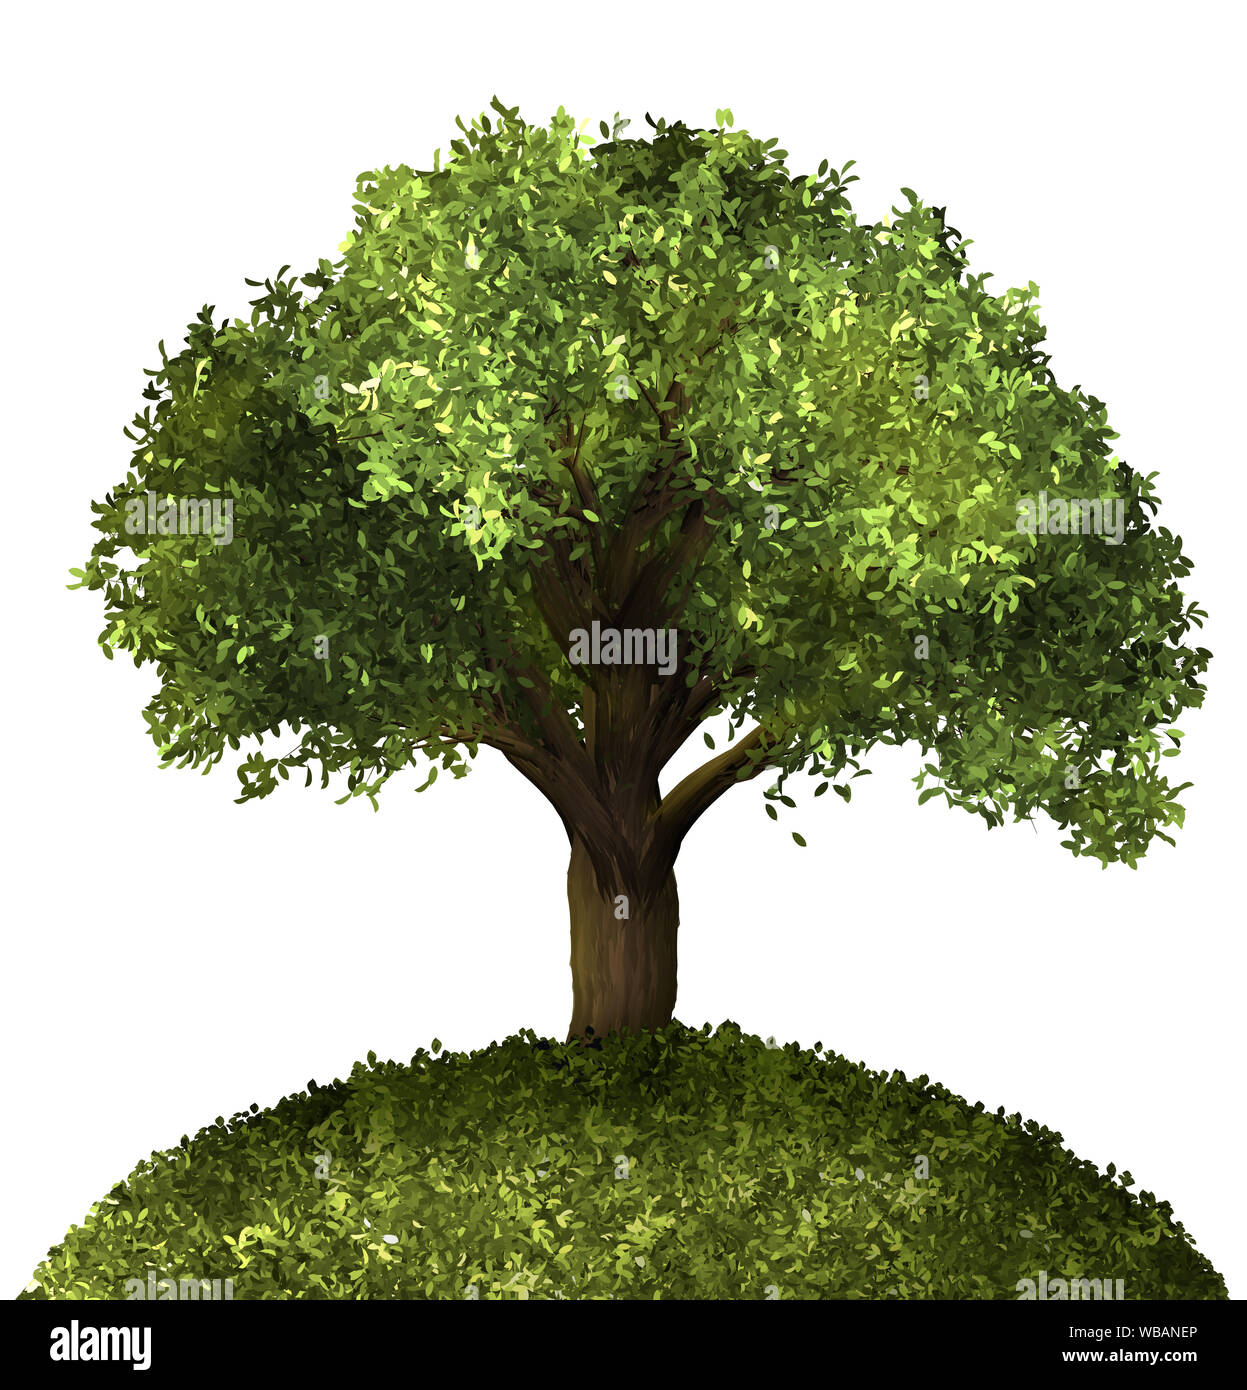 Weihnachtsbaum, Kiefer. Winter forrest Baum Hintergrund. 3D-Darstellung. Weißer Hintergrund isolieren. Natur und Gärten Design. Stockfoto